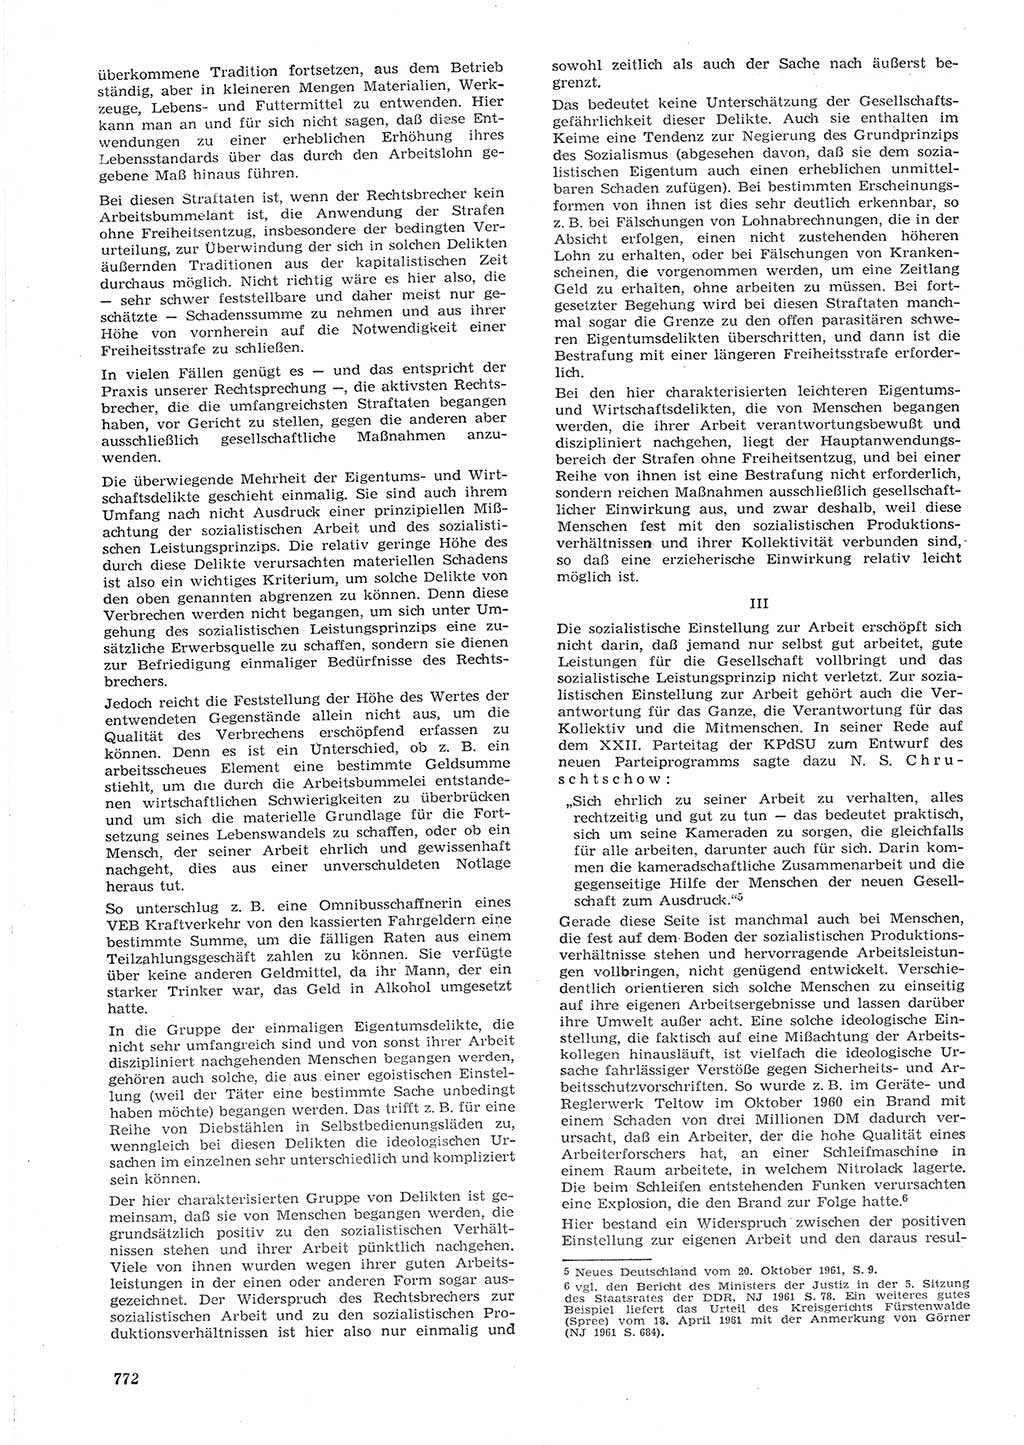 Neue Justiz (NJ), Zeitschrift für Recht und Rechtswissenschaft [Deutsche Demokratische Republik (DDR)], 15. Jahrgang 1961, Seite 772 (NJ DDR 1961, S. 772)